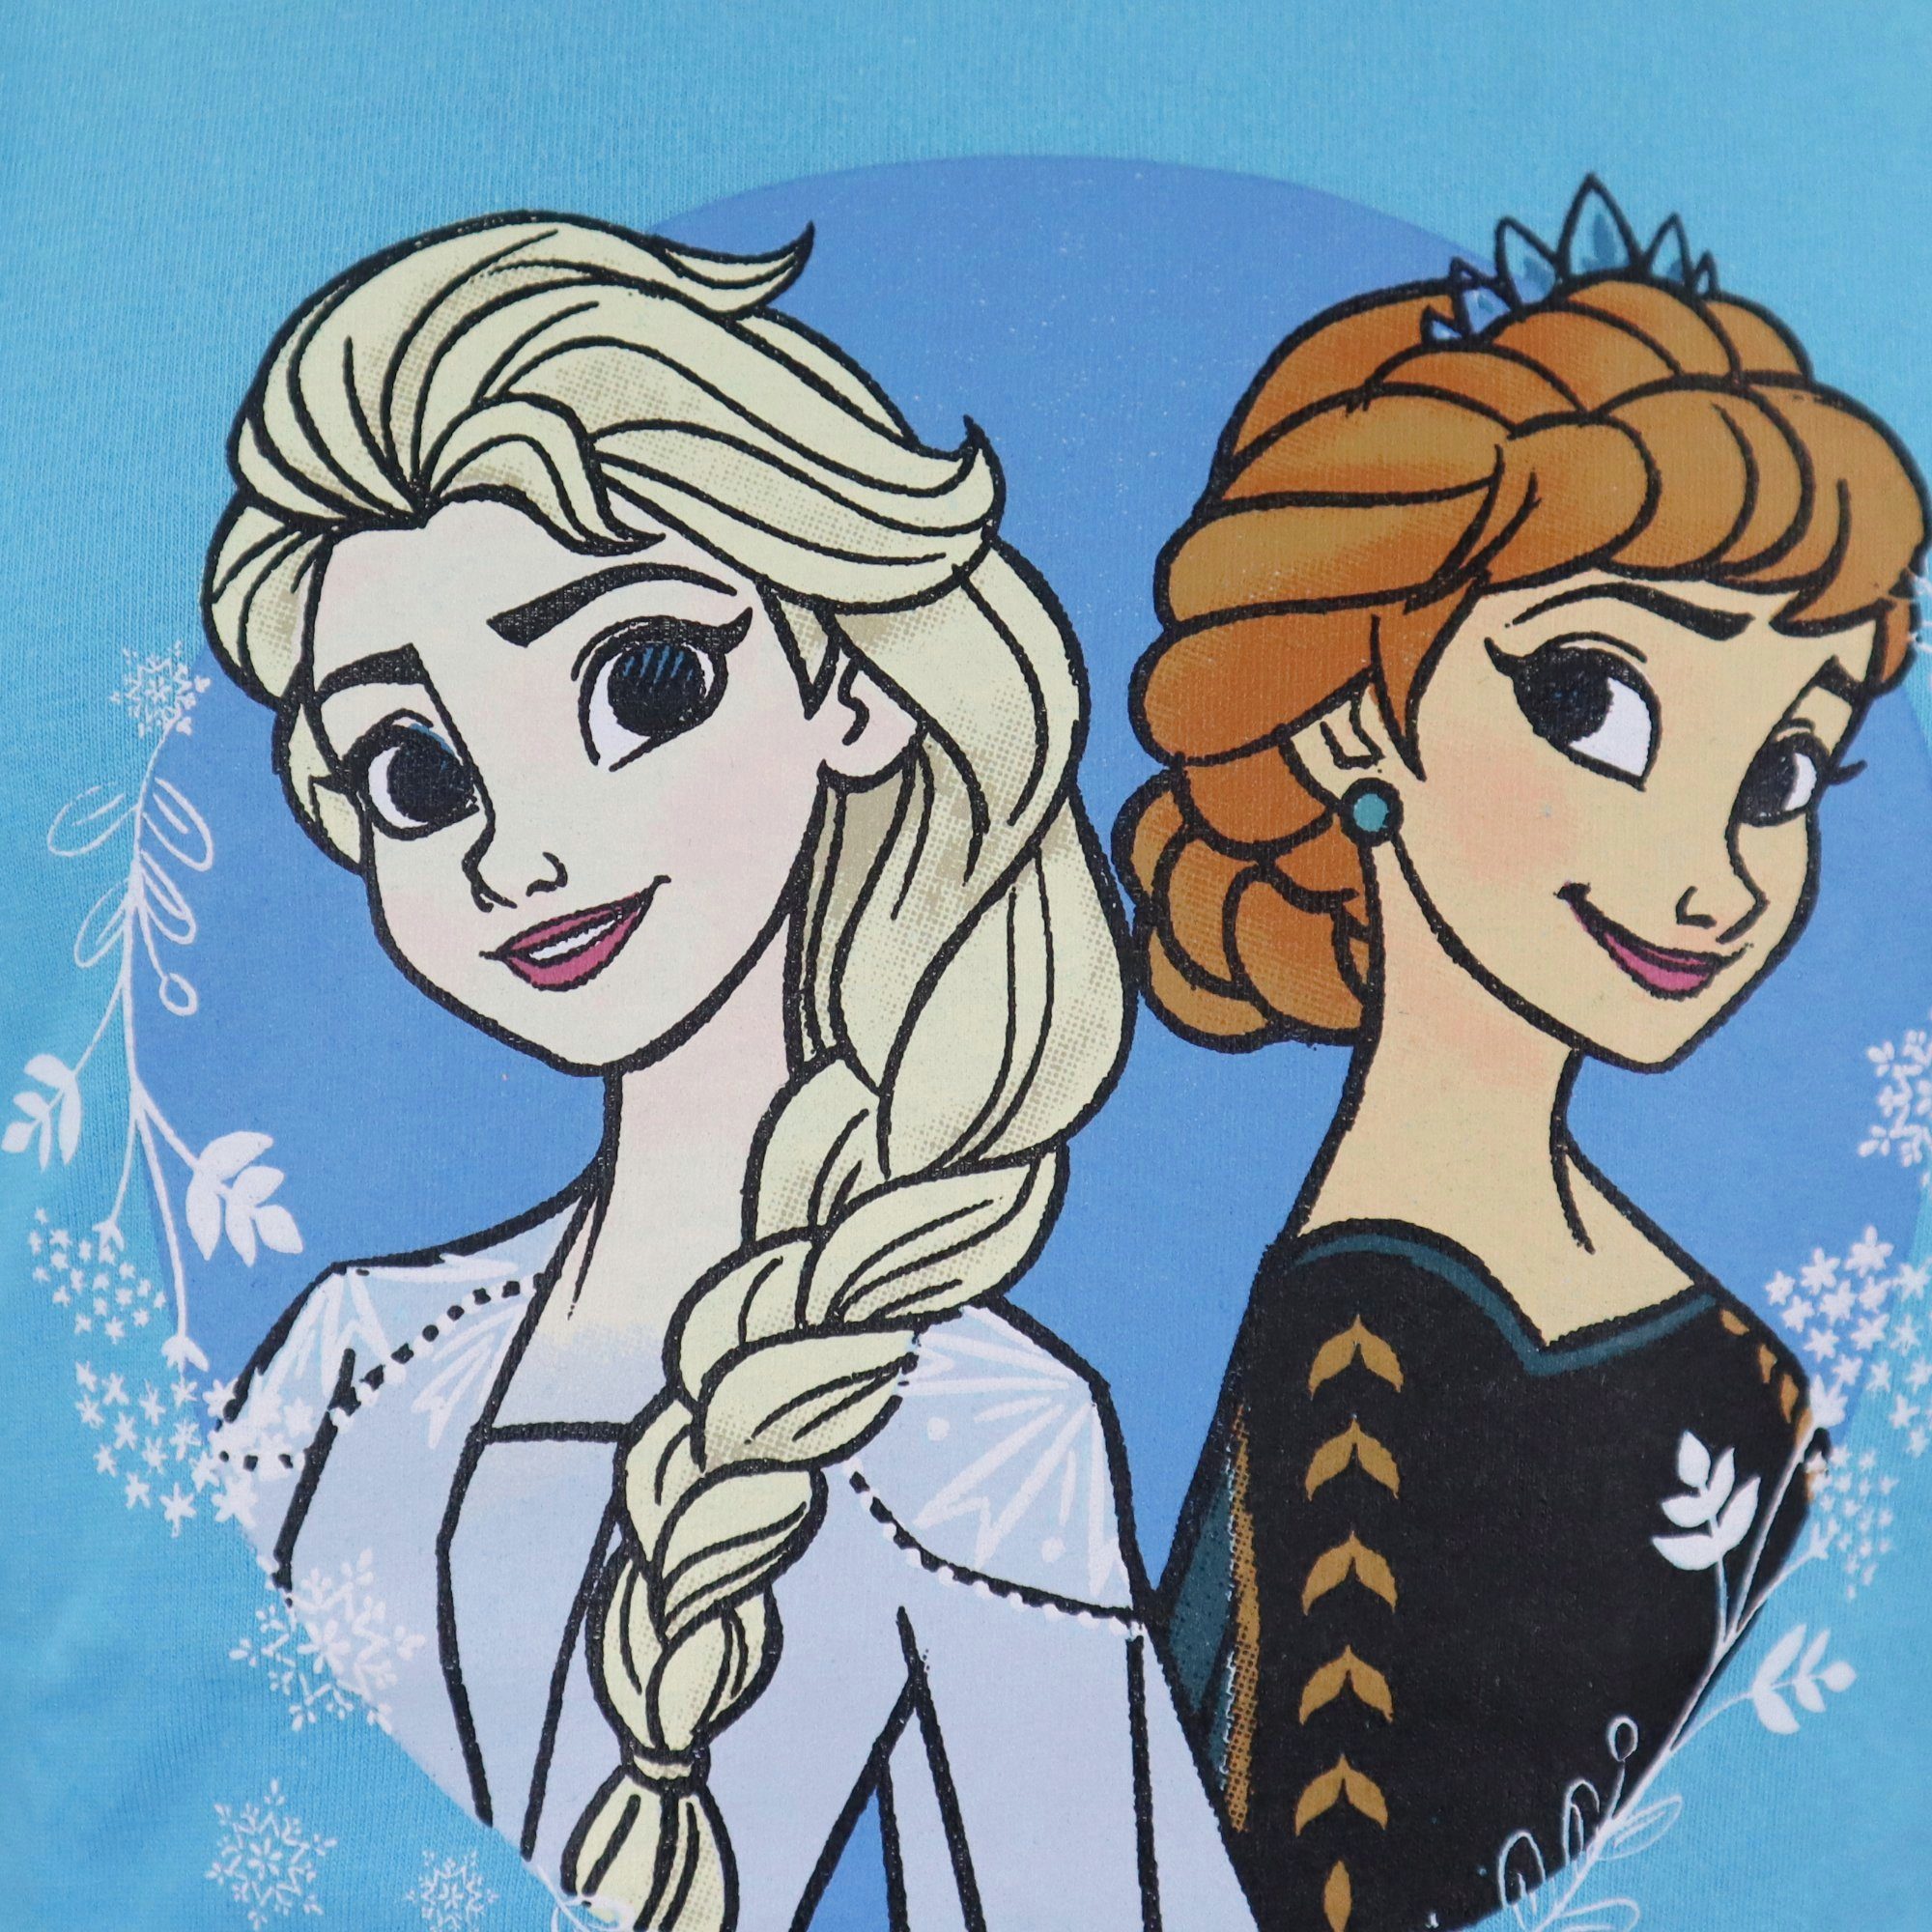 Frozen Blau Mädchen bis 134, 104 Schlafanzug Pyjama Elsa Disney Die Kinder und Anna Eiskönigin Gr. Baumwolle